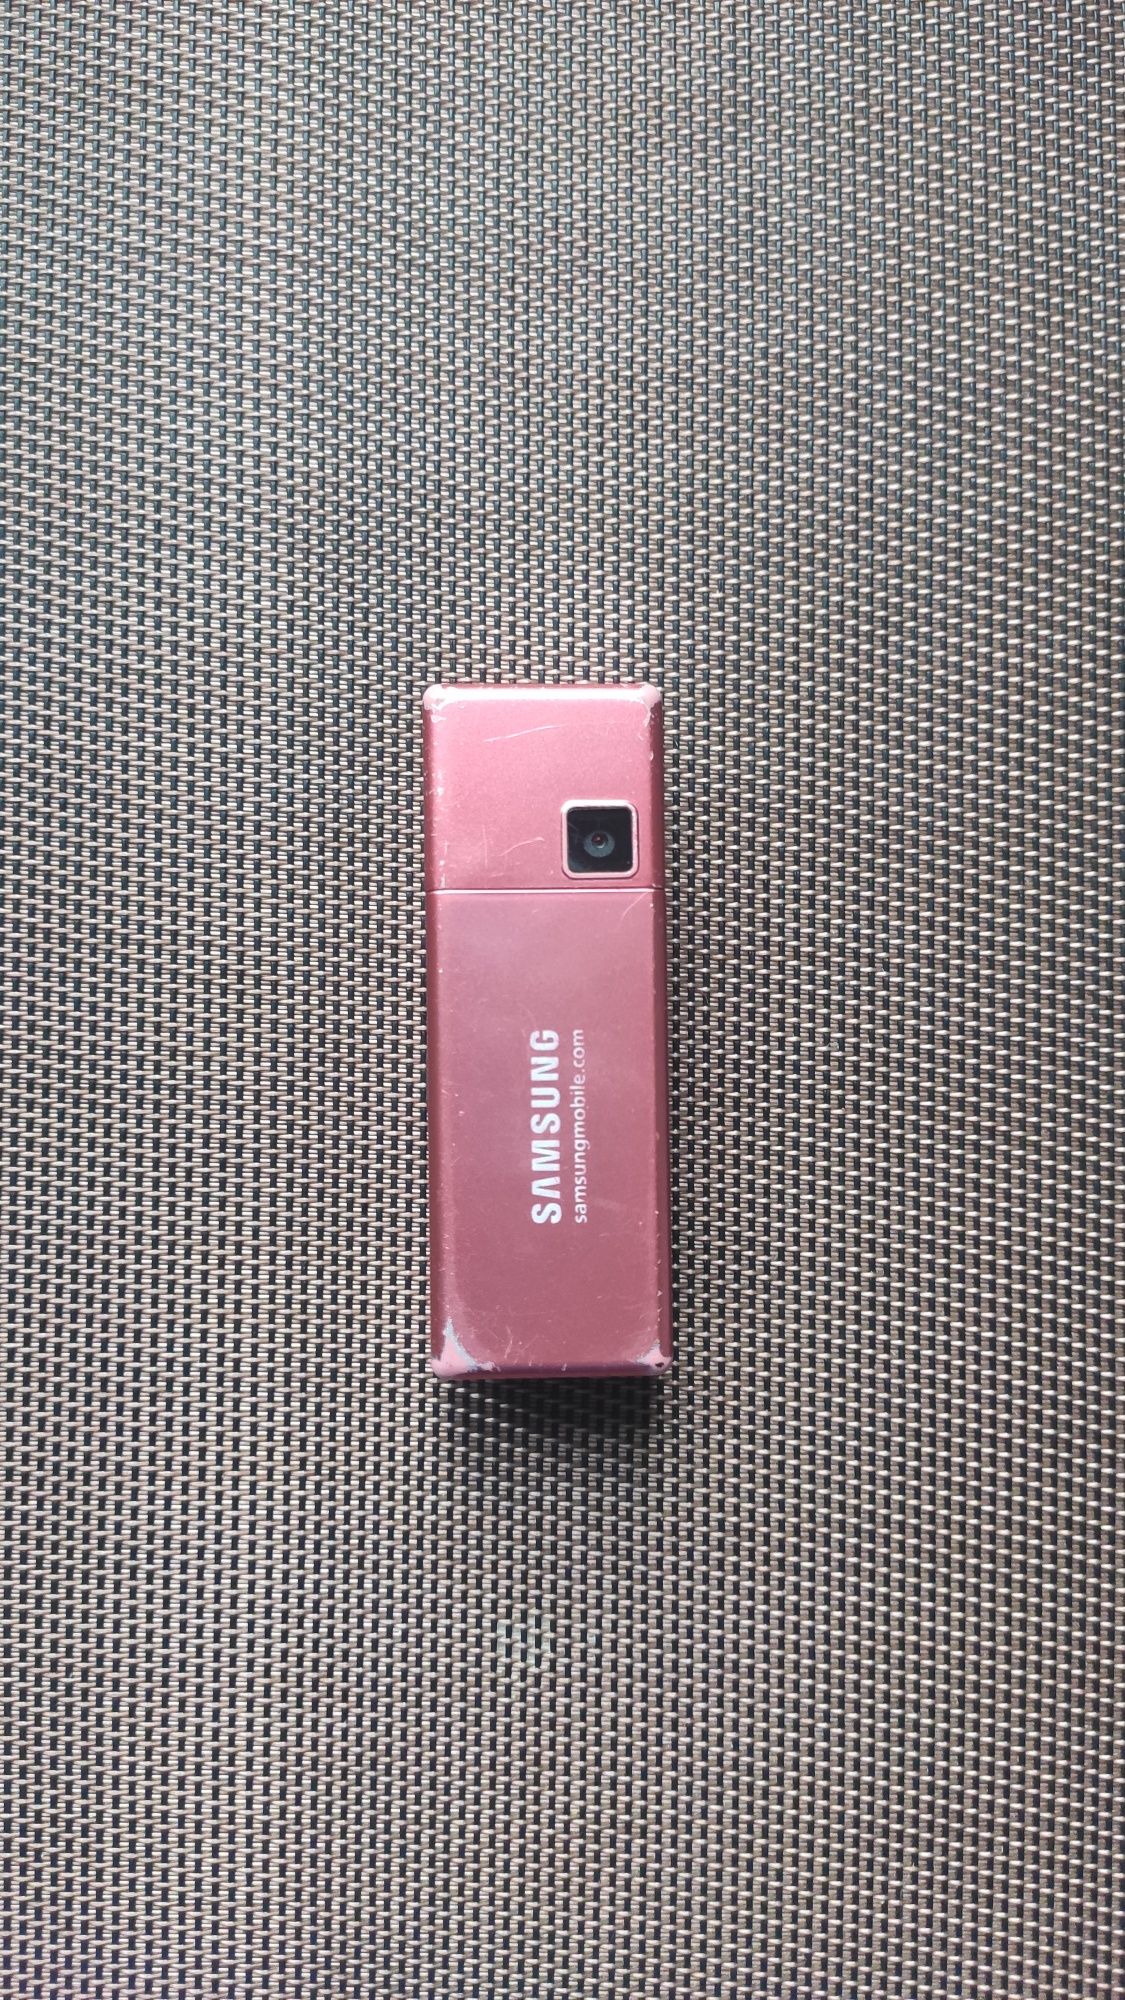 Samsung SGH- X830 pink